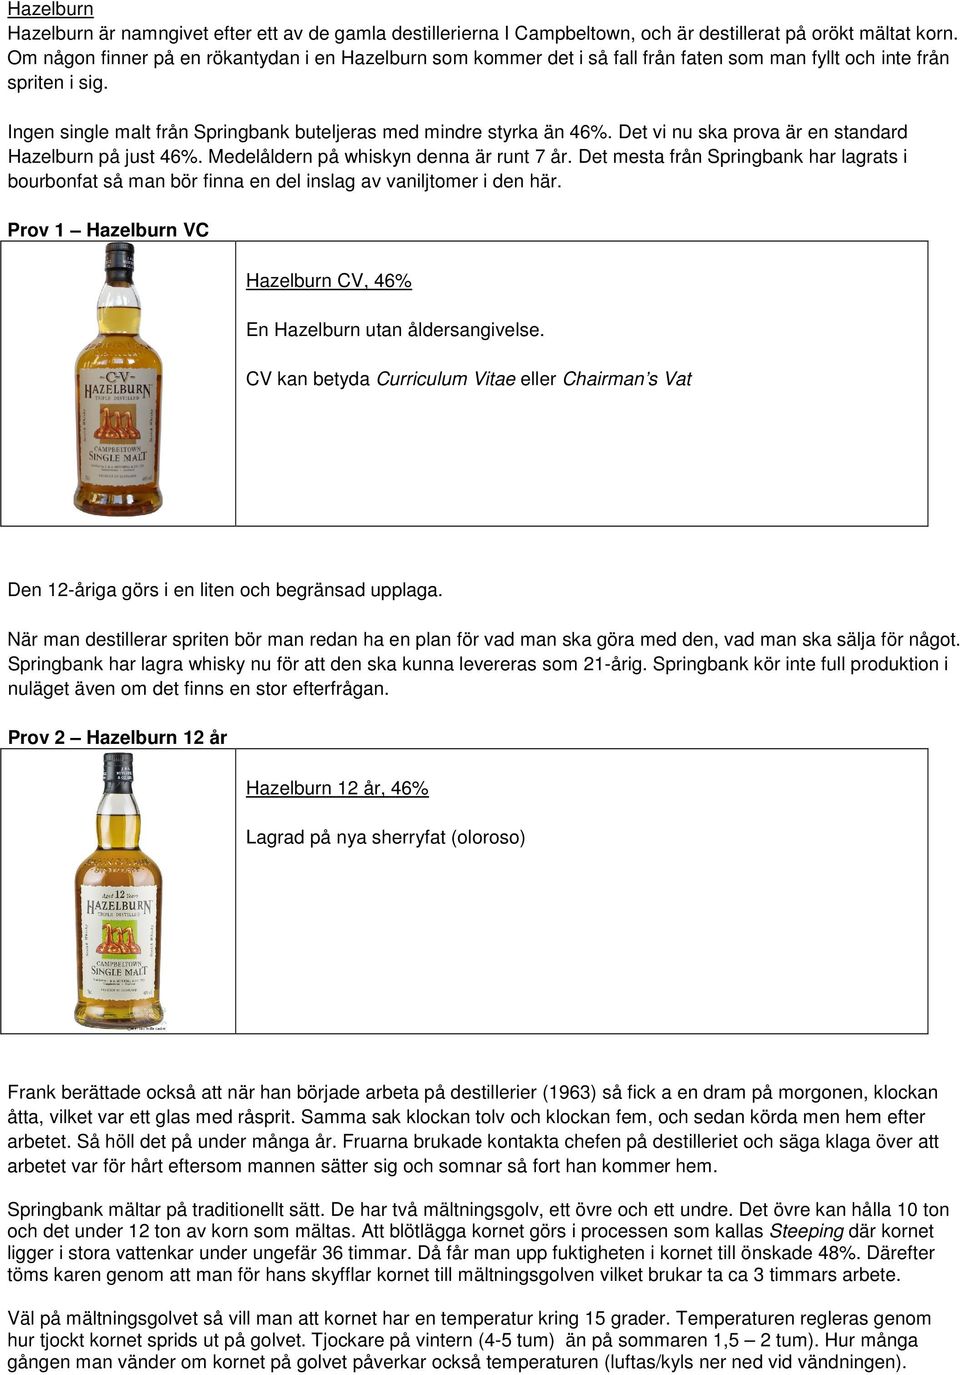 Det vi nu ska prova är en standard Hazelburn på just 46%. Medelåldern på whiskyn denna är runt 7 år.